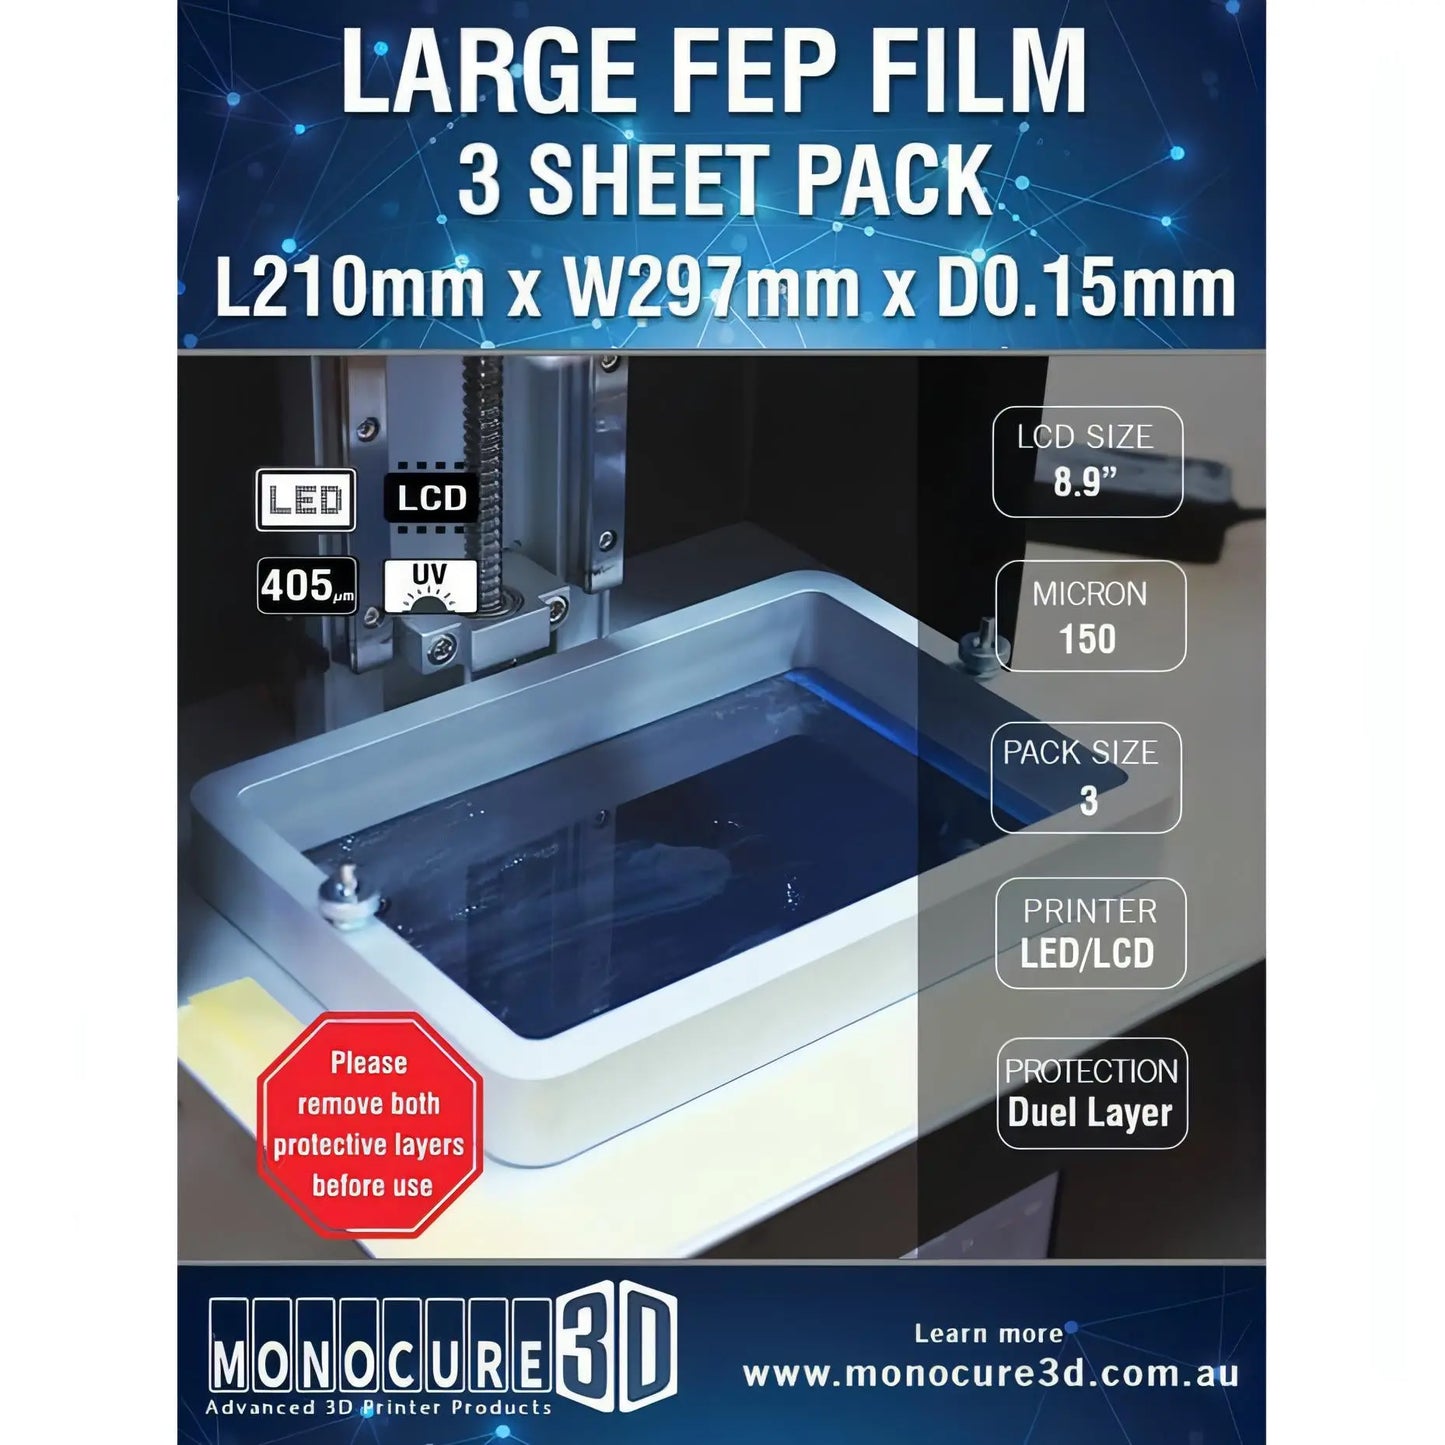 XL FEP FILM 150 Micron (3 Sheet Pack) 3D Print Creativity